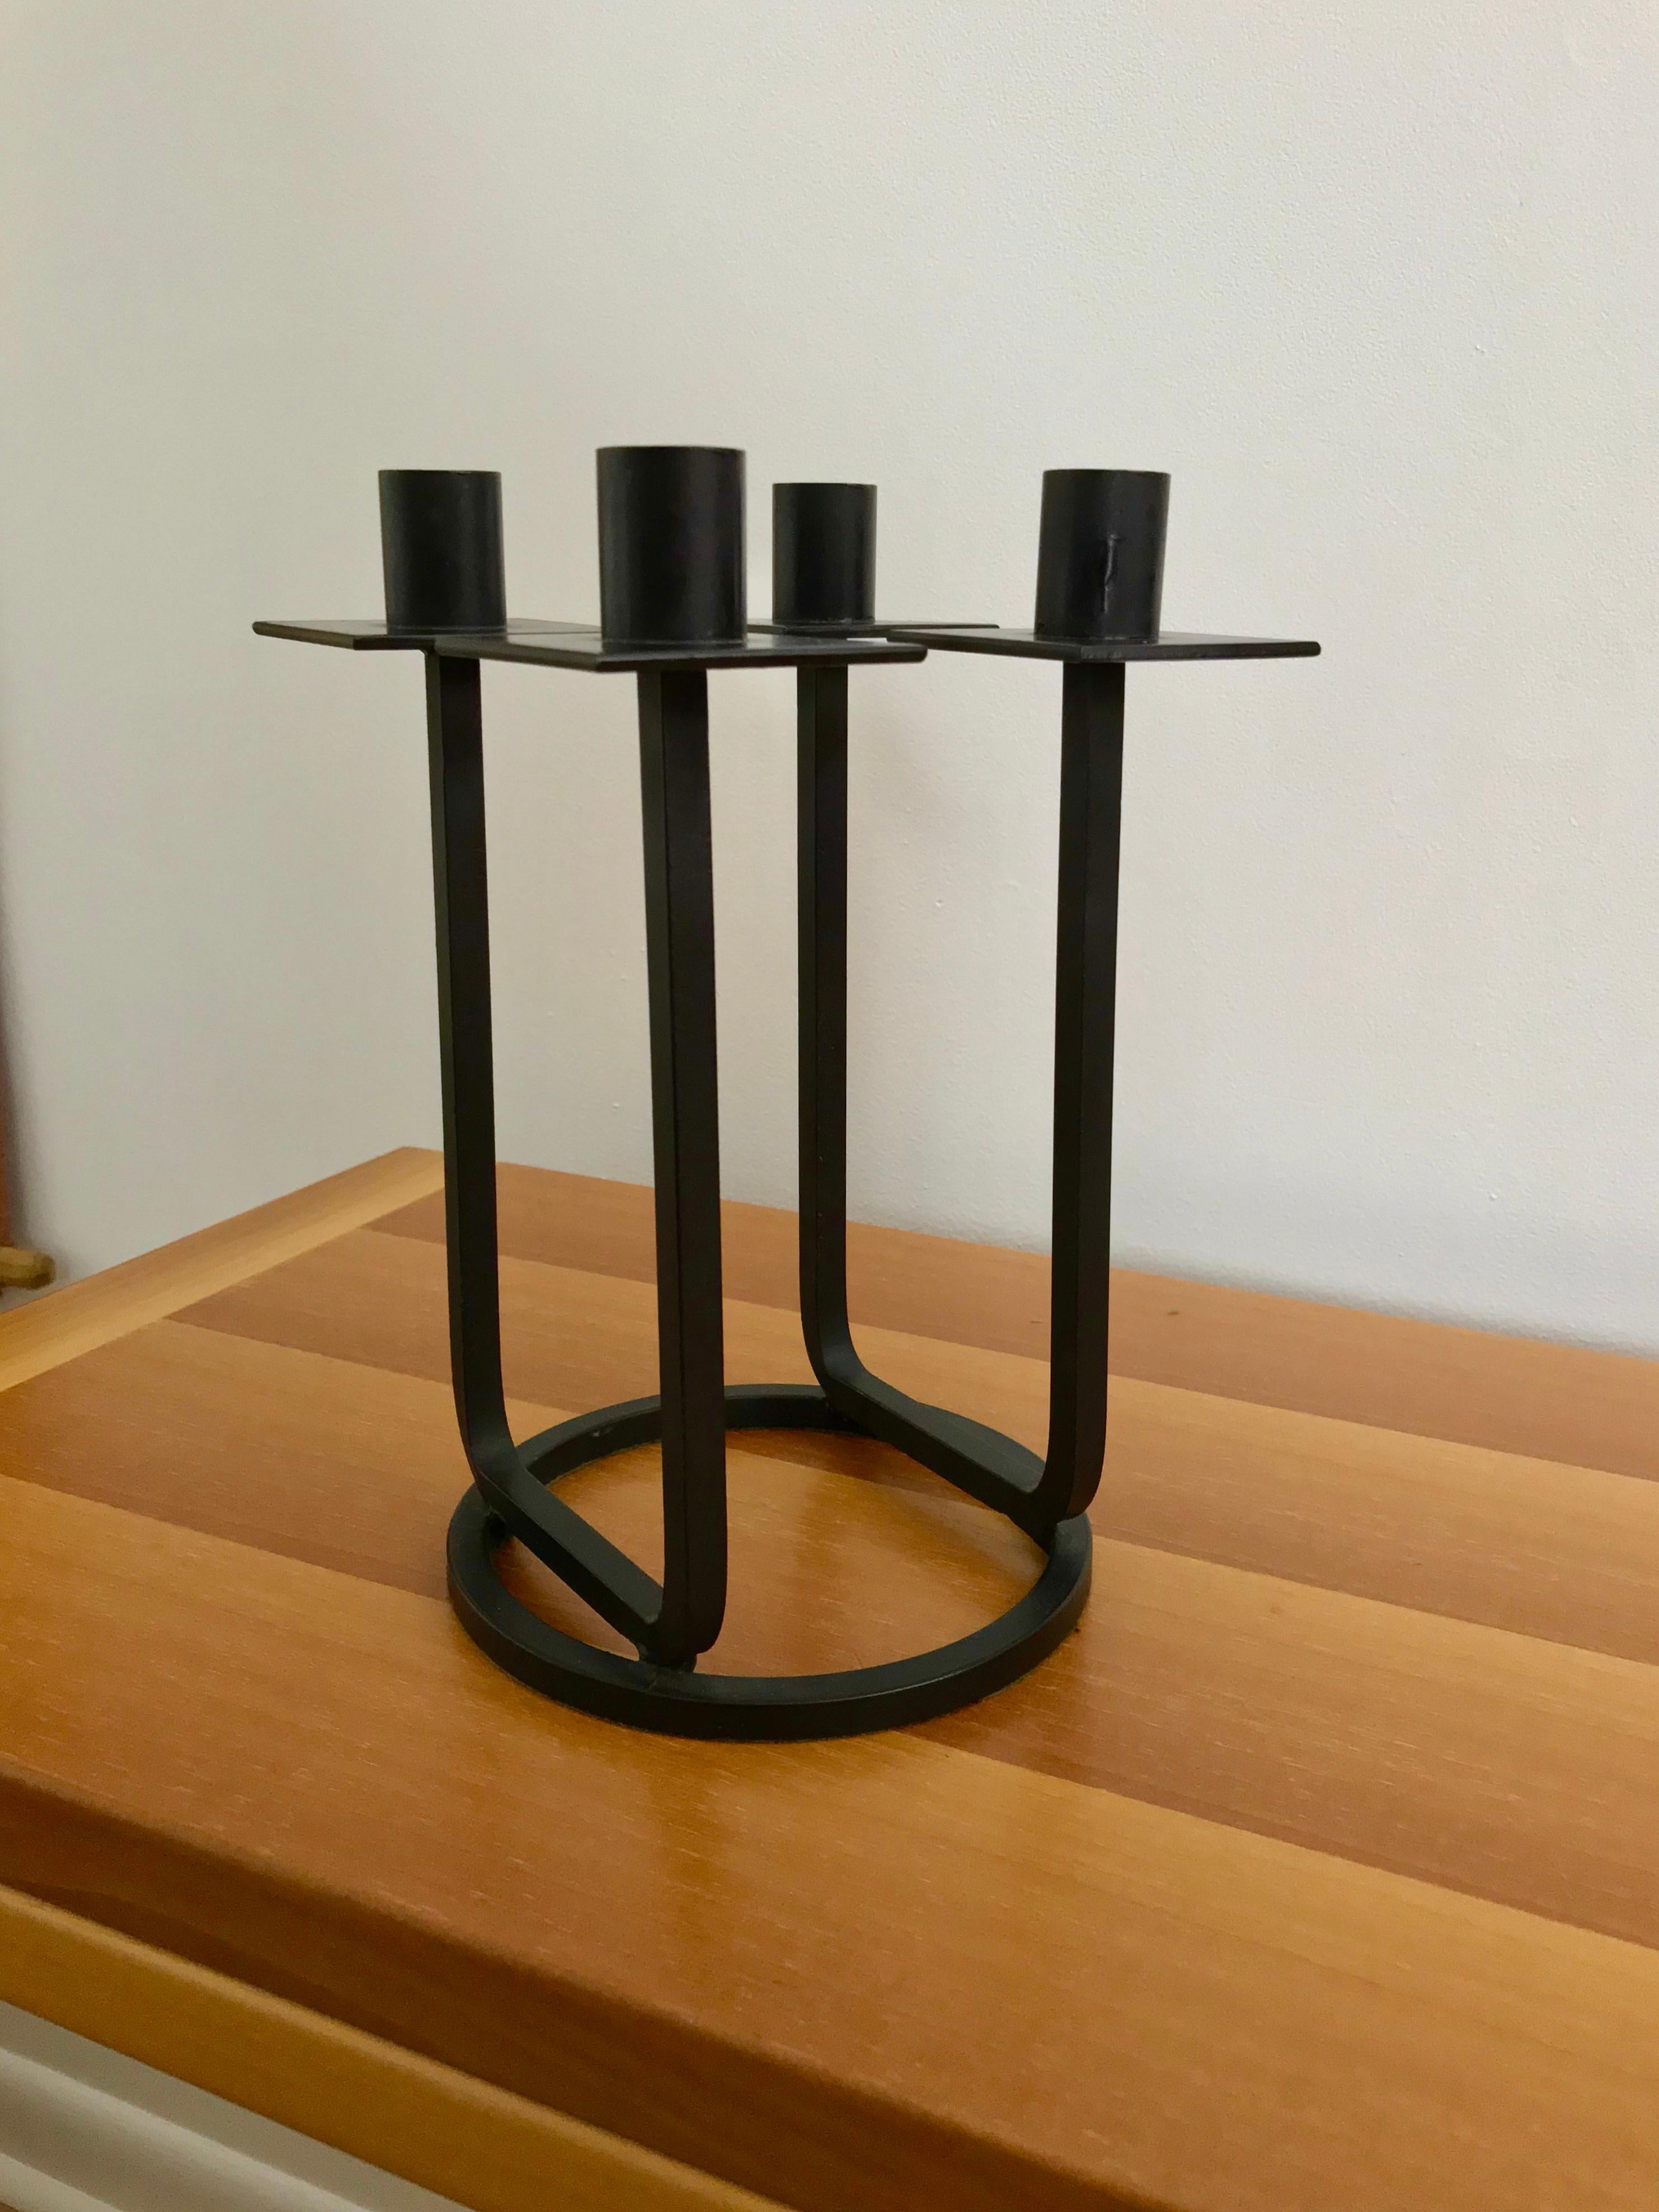 Ein schwarzer Kerzenständer aus gebogenem Eisen, entworfen von Hendrik Van Keppel und Taylor Green von Van Keppel - Green, Beverly Hills, Kalifornien.  Der Kerzenständer ist schwarz lackiertem Eisen, entworfen / hergestellt in den 1950er Jahren und